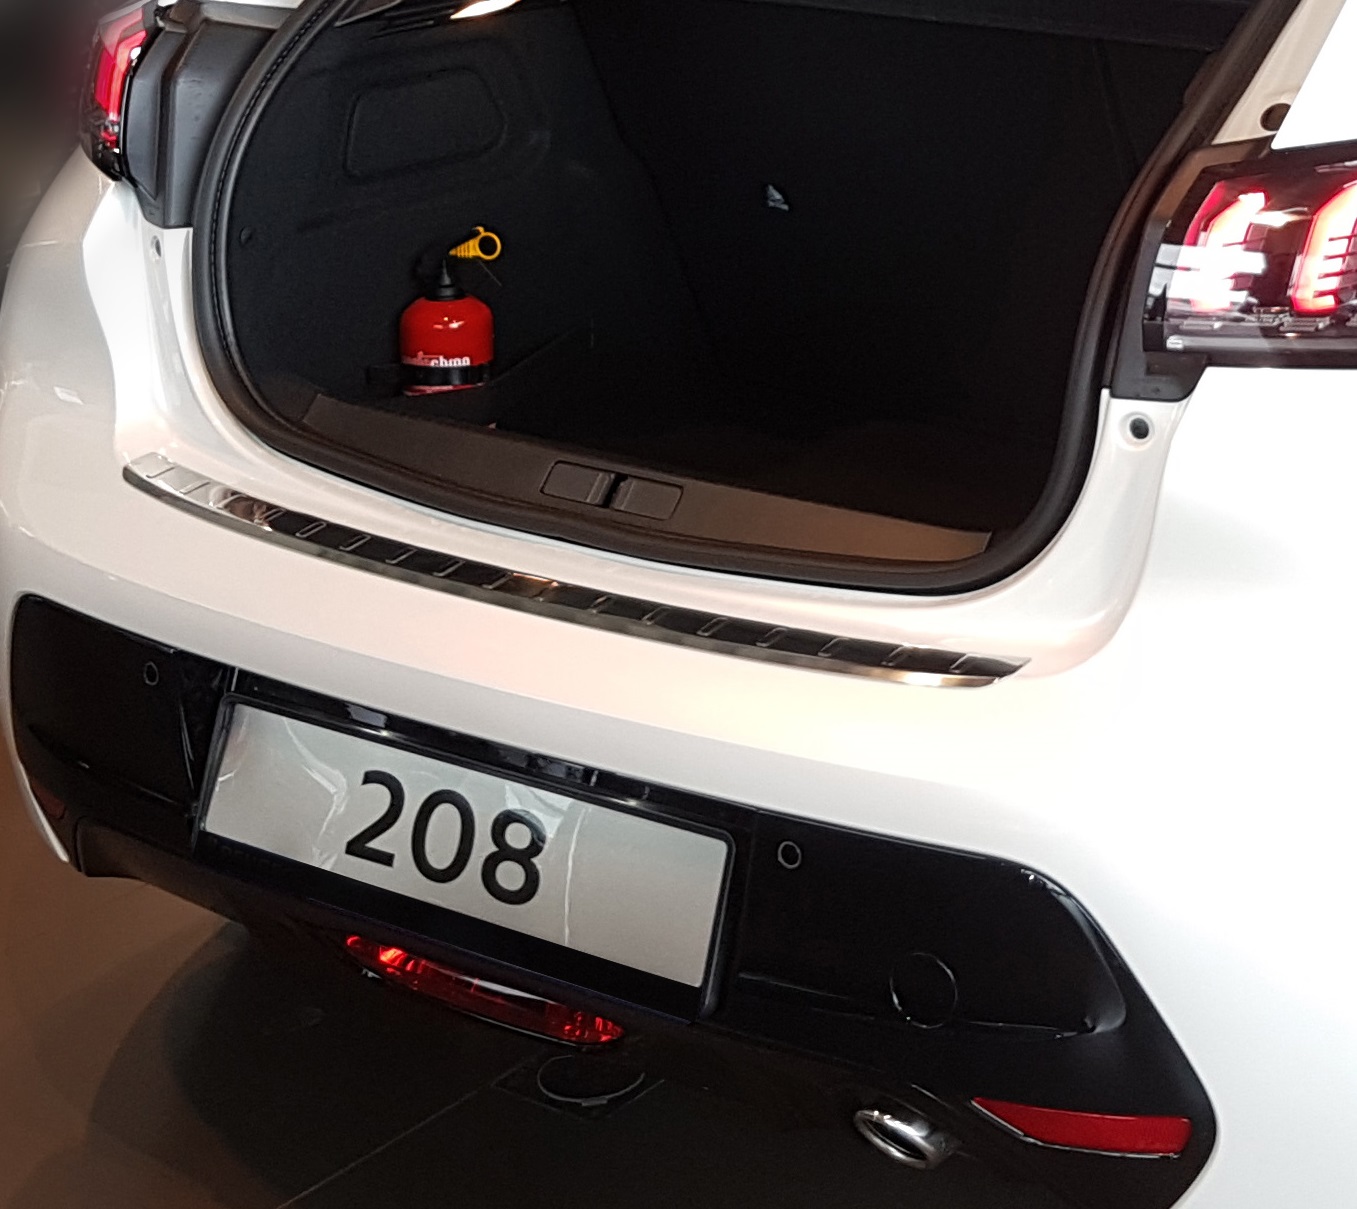 EDELSTAHL 2019- Ladekantenschutz 208 ab Peugeot hochwertiger